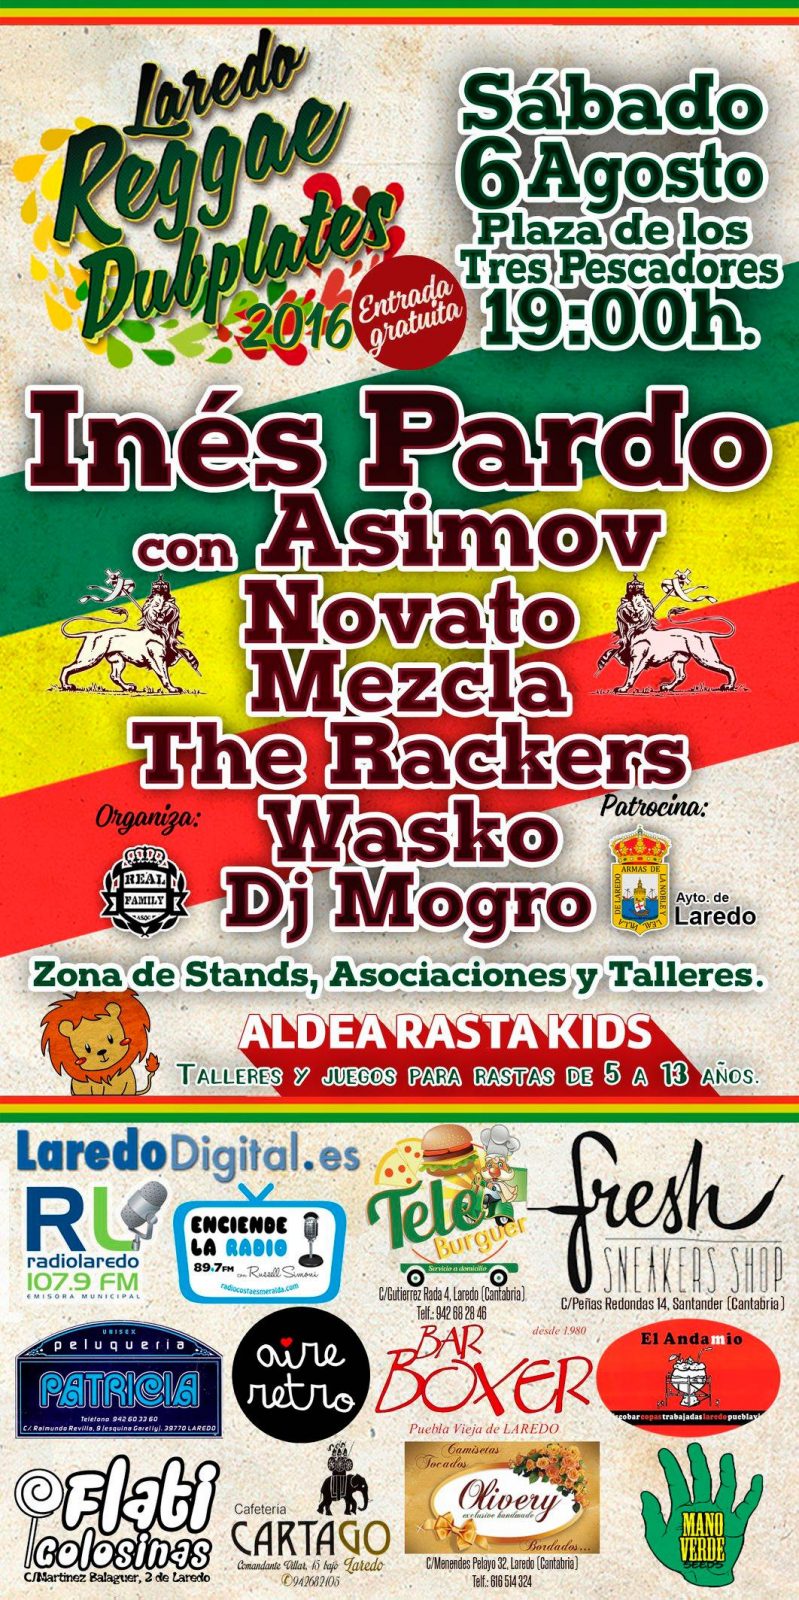 Cartel del Laredo Reggae Dubplates 2016 con Inés Pardo y Asimov